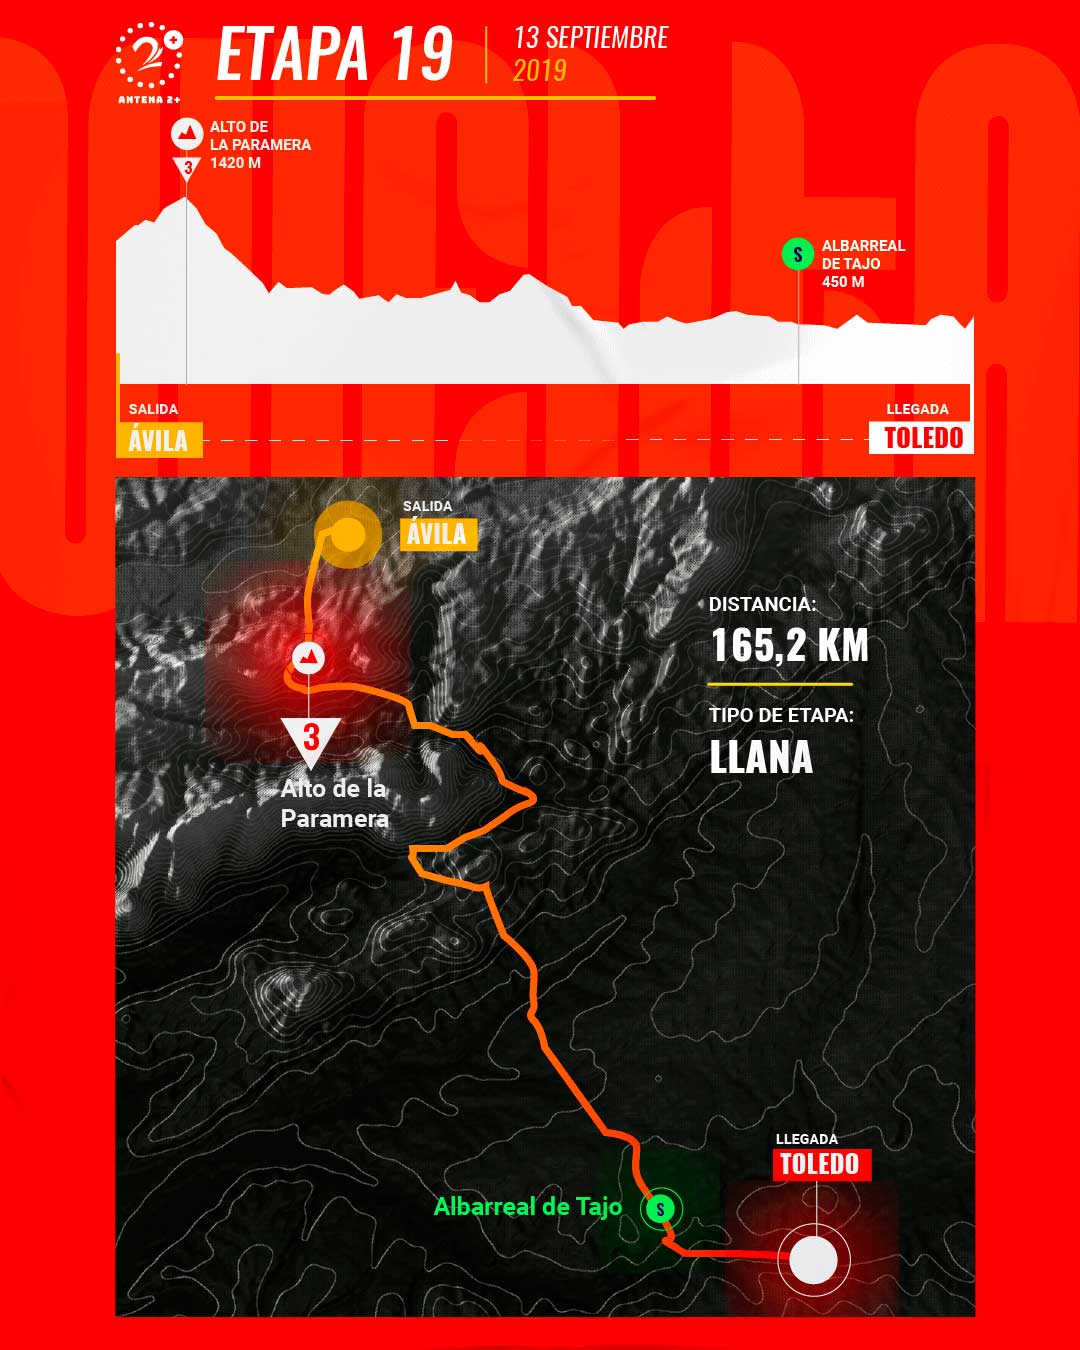 Etapa 19, Vuelta a España 2019 